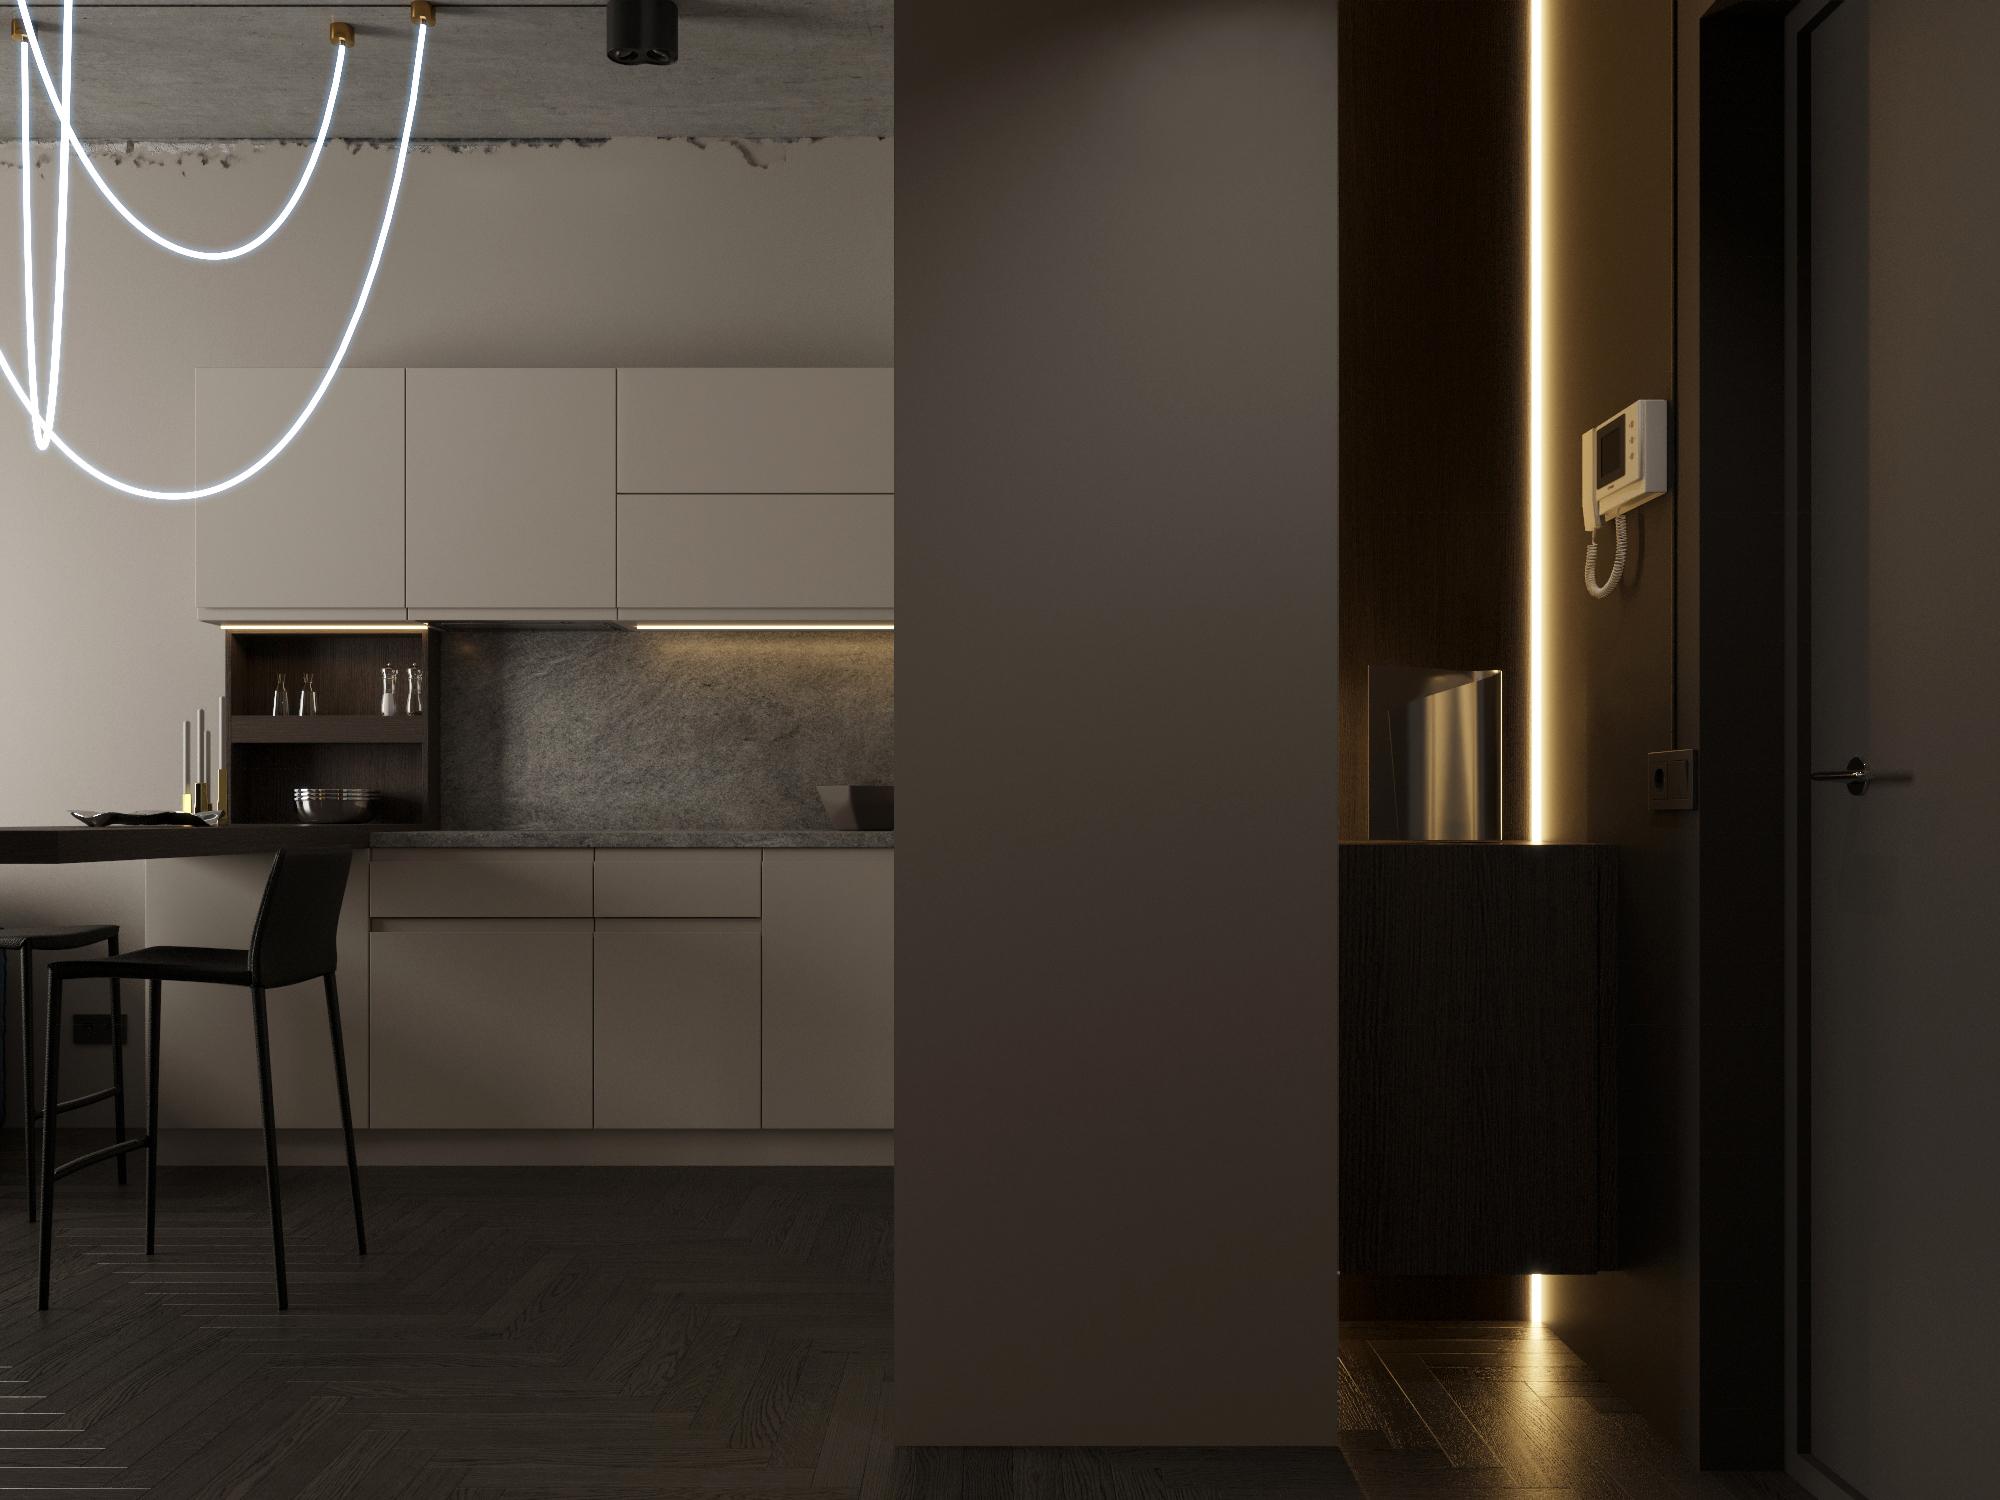 Интерьер кухни с рейками с подсветкой, подсветкой настенной, подсветкой светодиодной и с подсветкой